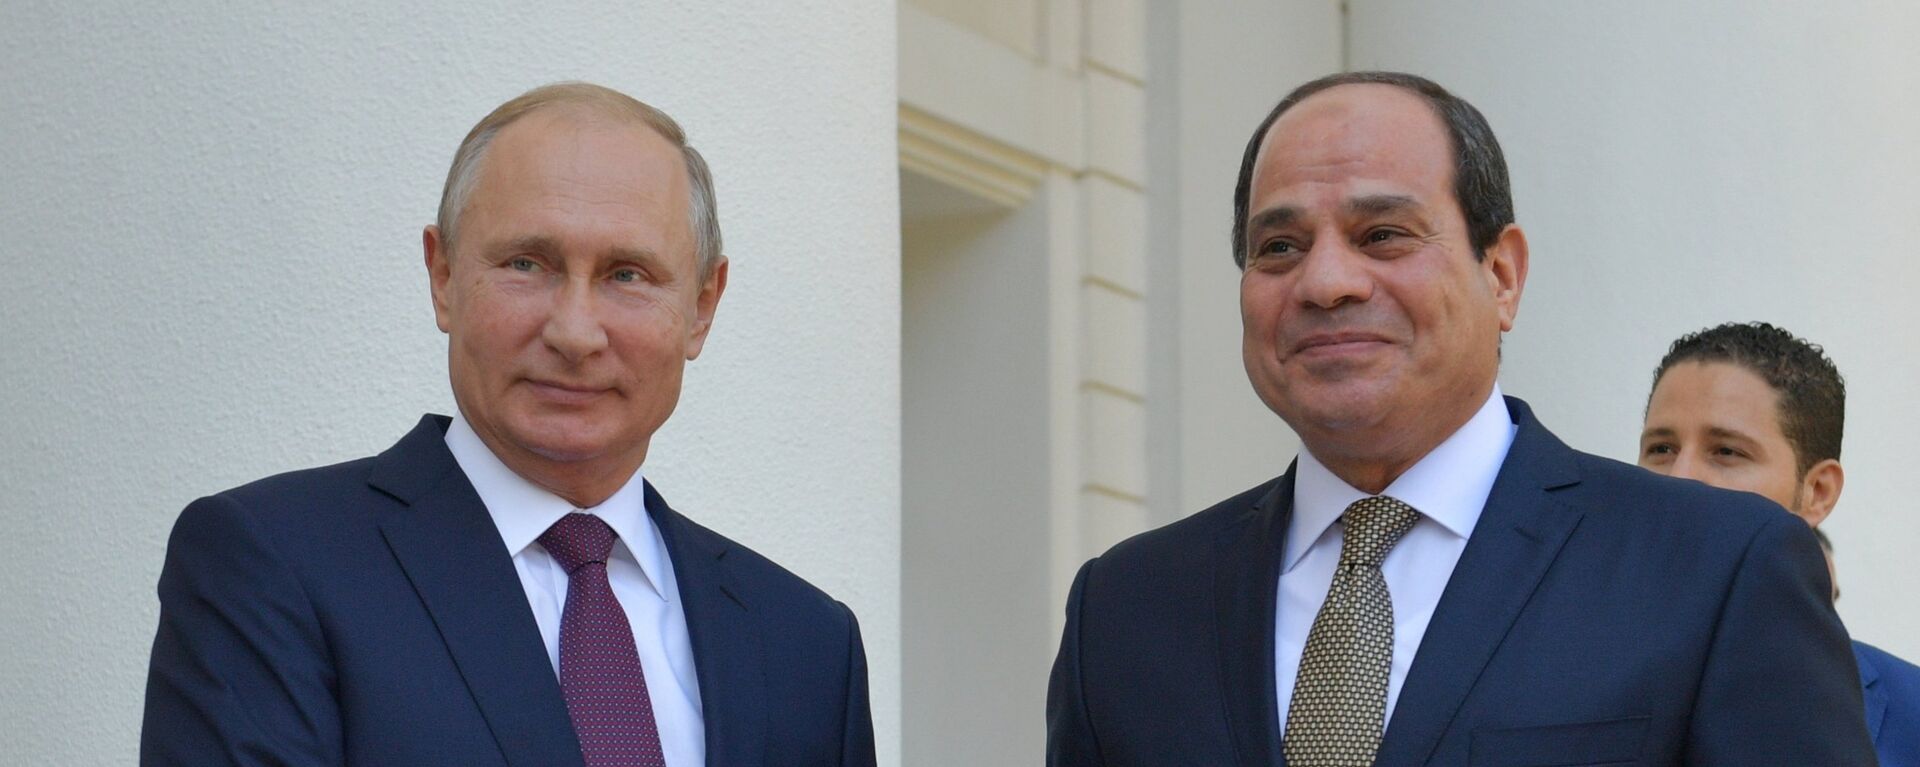 الرئيس الروسي فلاديمير بوتين والرئيس المصري عبد الفتاح السيسي - سبوتنيك عربي, 1920, 23.04.2021